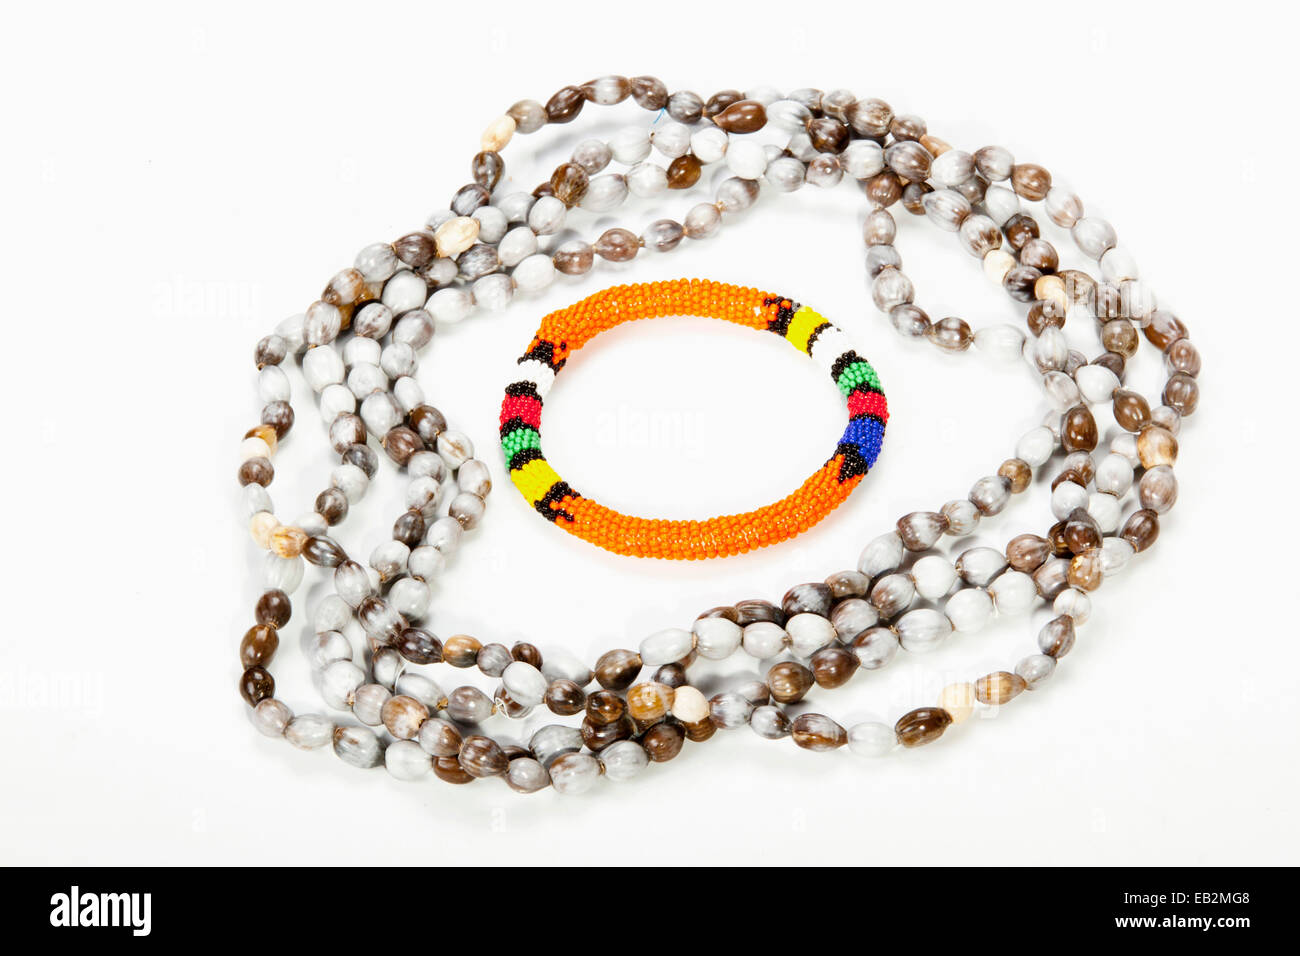 beaded Zulu necklace with bright orange armband Stock Photo